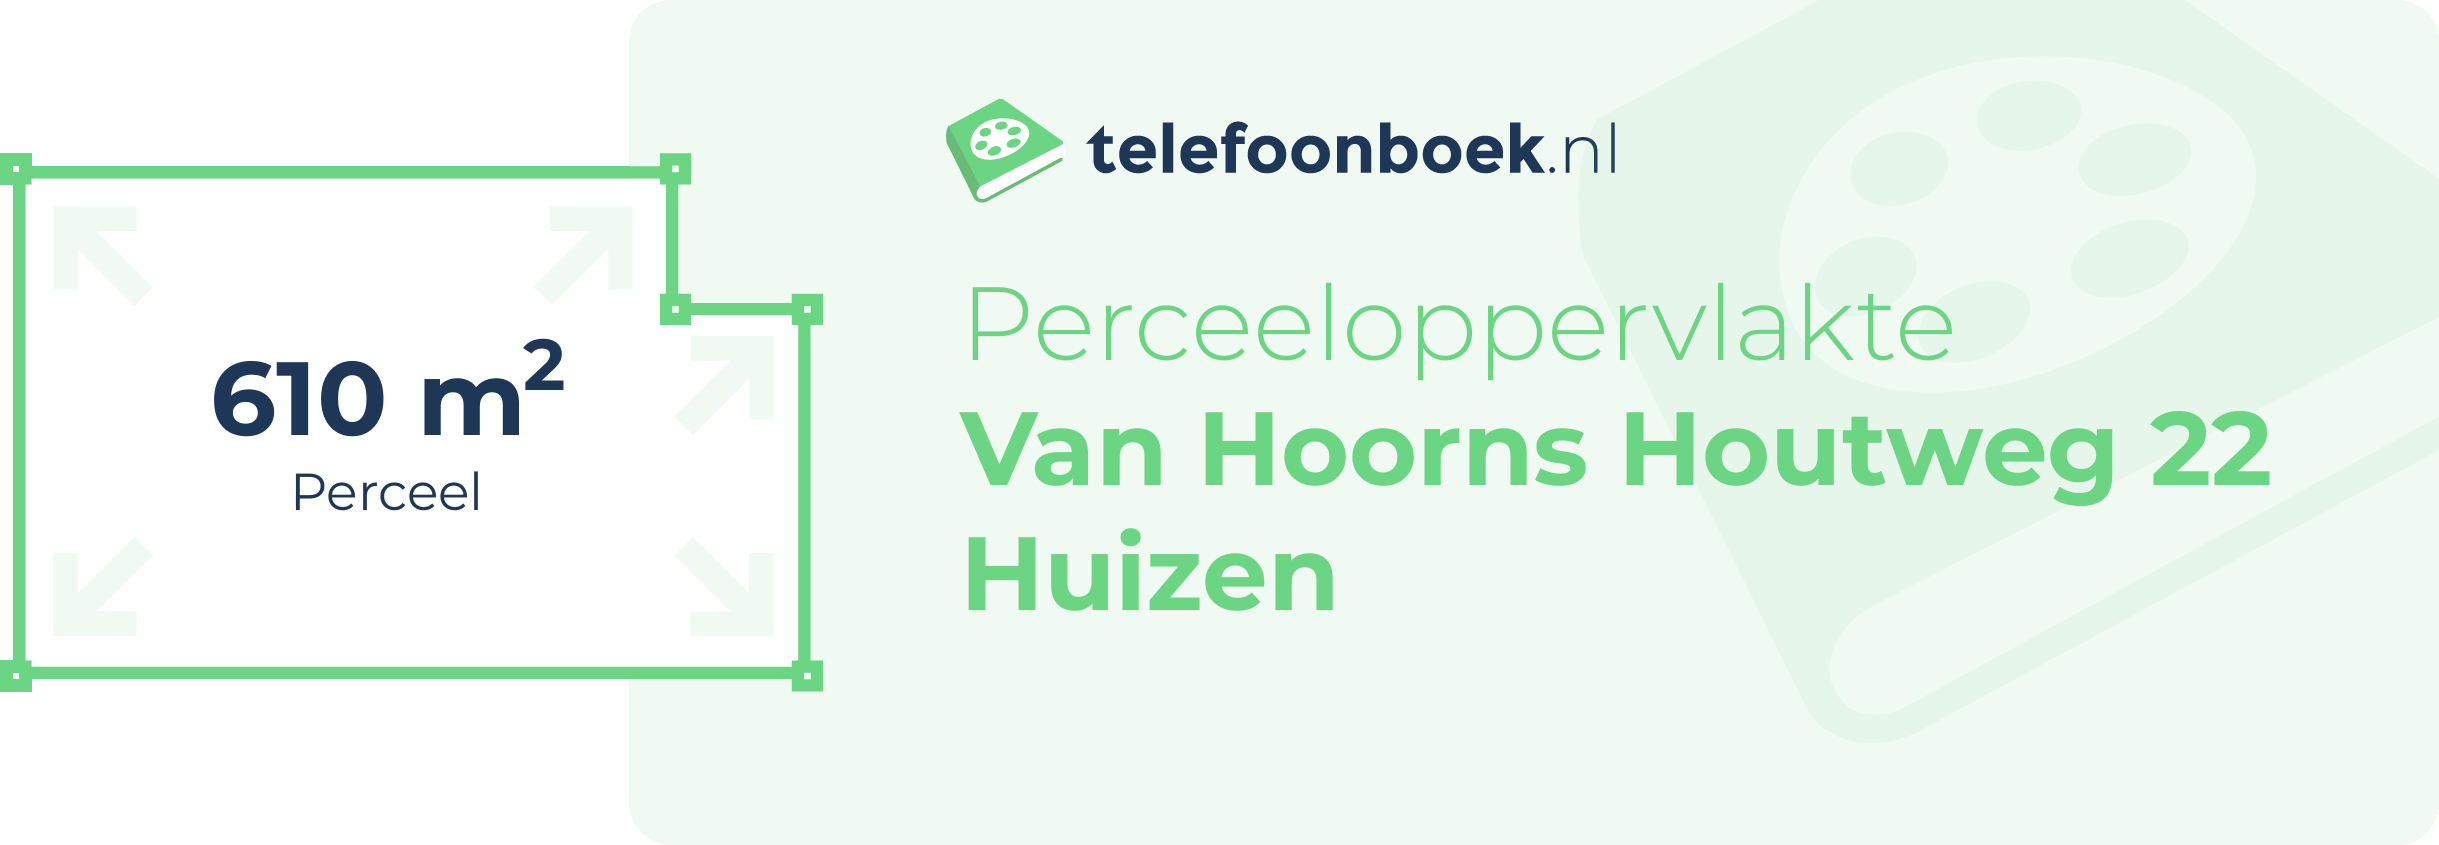 Perceeloppervlakte Van Hoorns Houtweg 22 Huizen